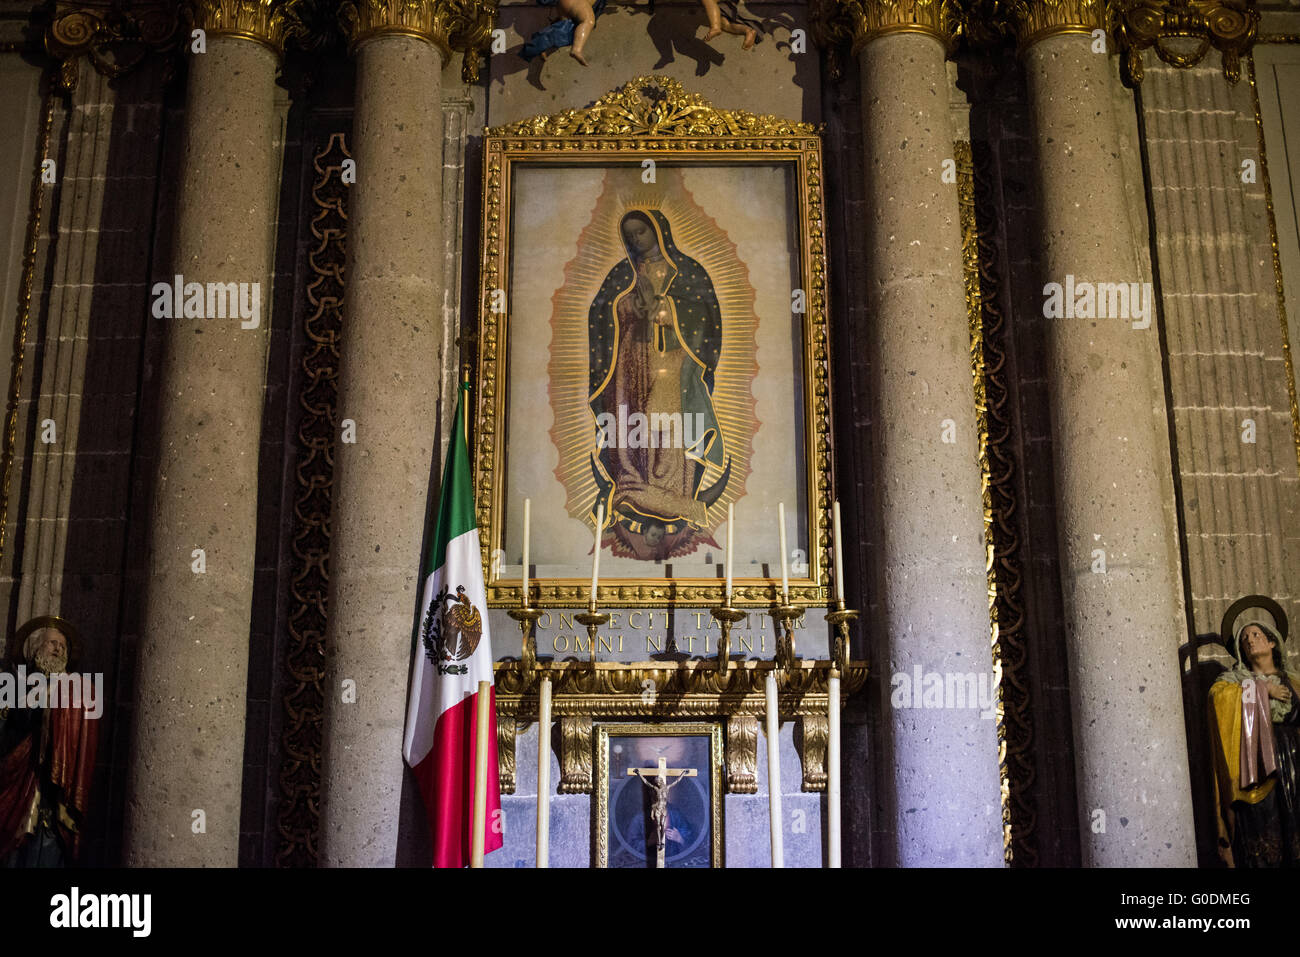 MEXICO CITY, Mexiko--ein Bild der Muttergottes von Guadalupe in einer Kapelle in der Kathedrale. Phasen von 1573 bis 1813 erbaut, ist die Kathedrale von Mexiko-Stadt die größte römisch-katholische Kathedrale in Amerika. Es befindet sich im Herzen der Altstadt von Mexiko-Stadt auf der einen Seite von den Zocalo. Stockfoto